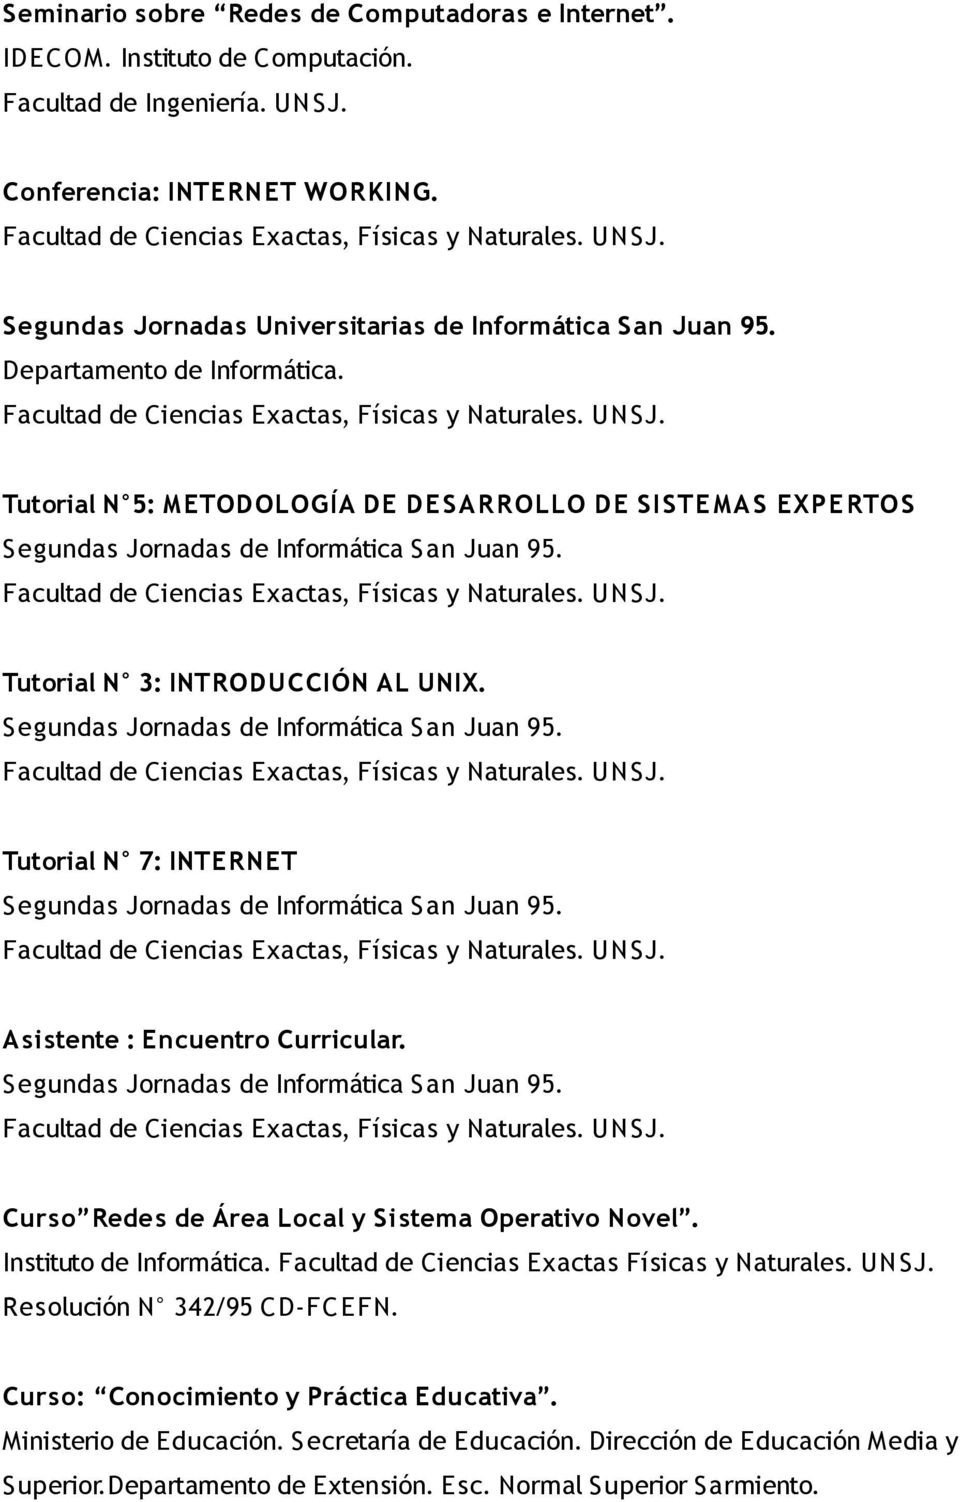 Tutorial N 3: INTRODUCCIÓN AL UNIX. Segundas Jornadas de Informática San Juan 95. Tutorial N 7: INTERNET Segundas Jornadas de Informática San Juan 95. Asistente : Encuentro Curricular.